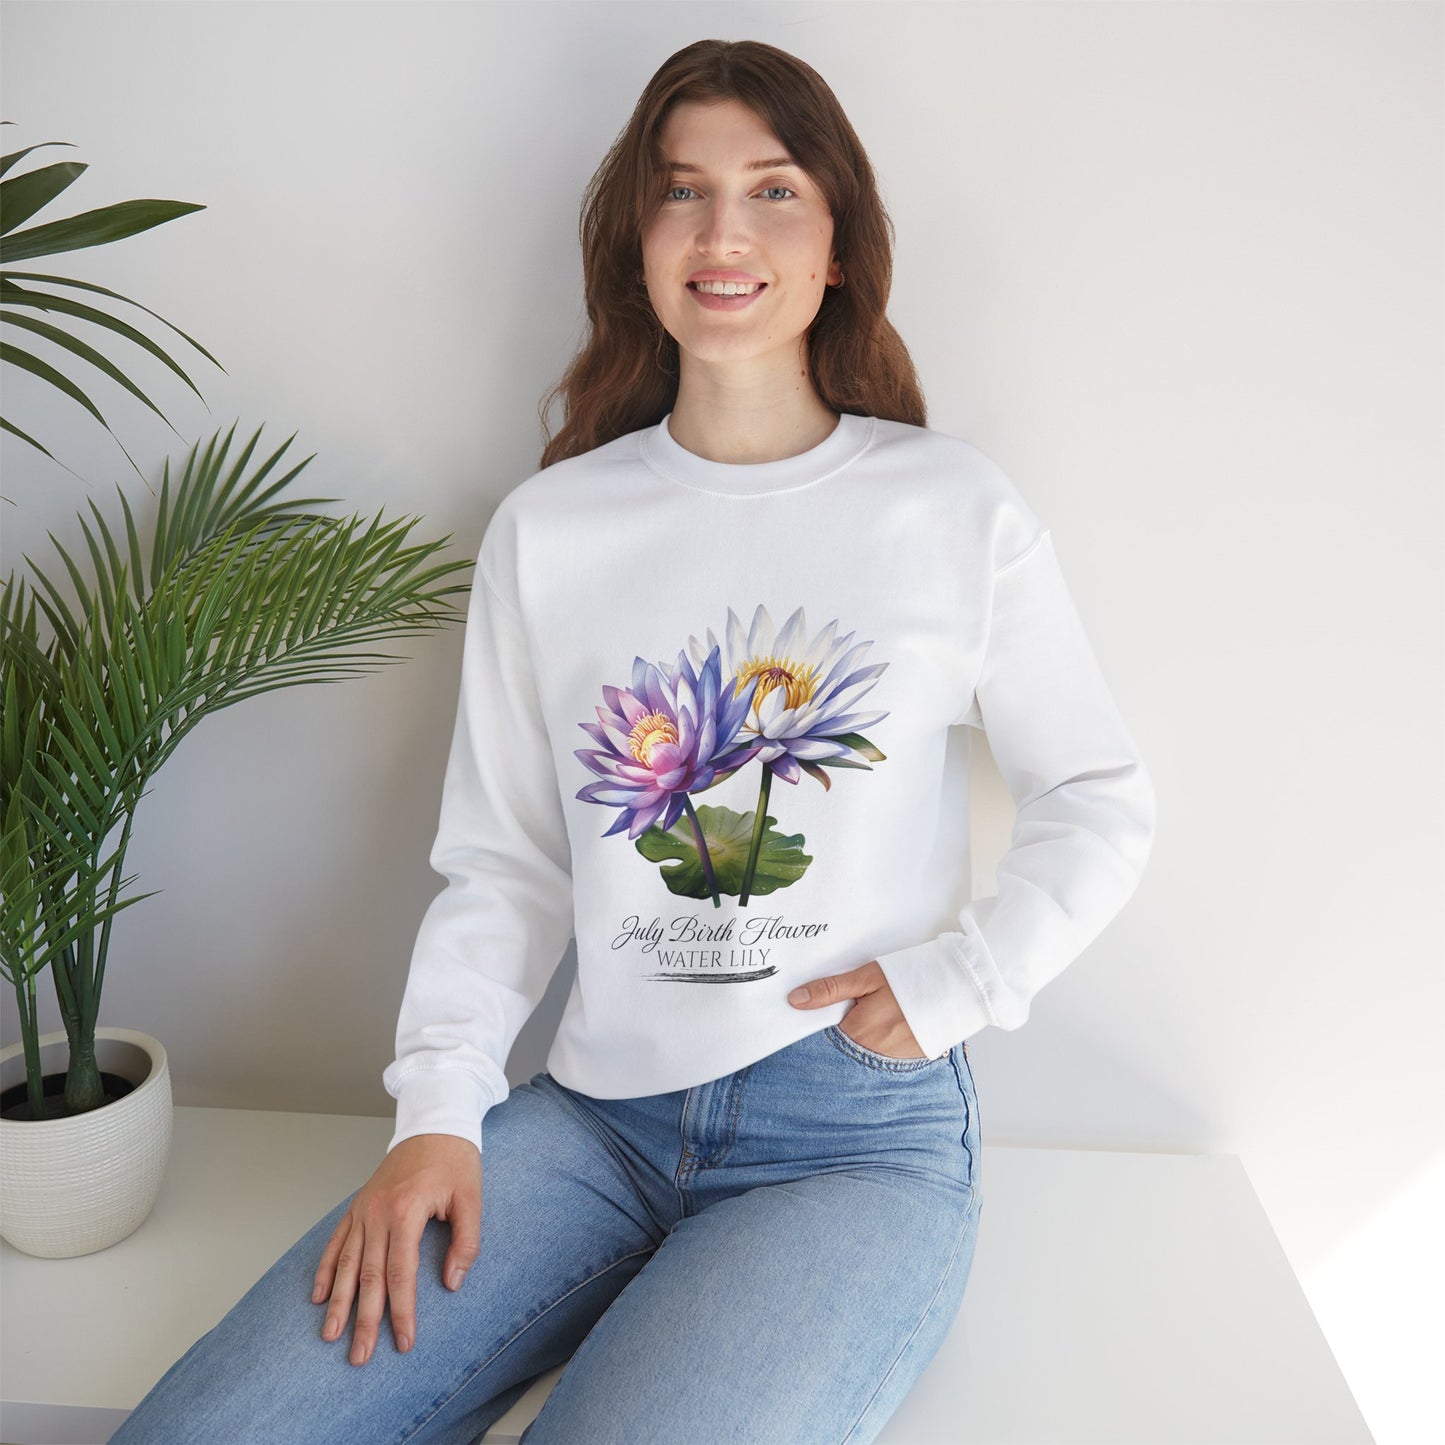 July Birth Flower (Water Lily) - Unisex Heavy Blend™ Crewneck Sweatshirt